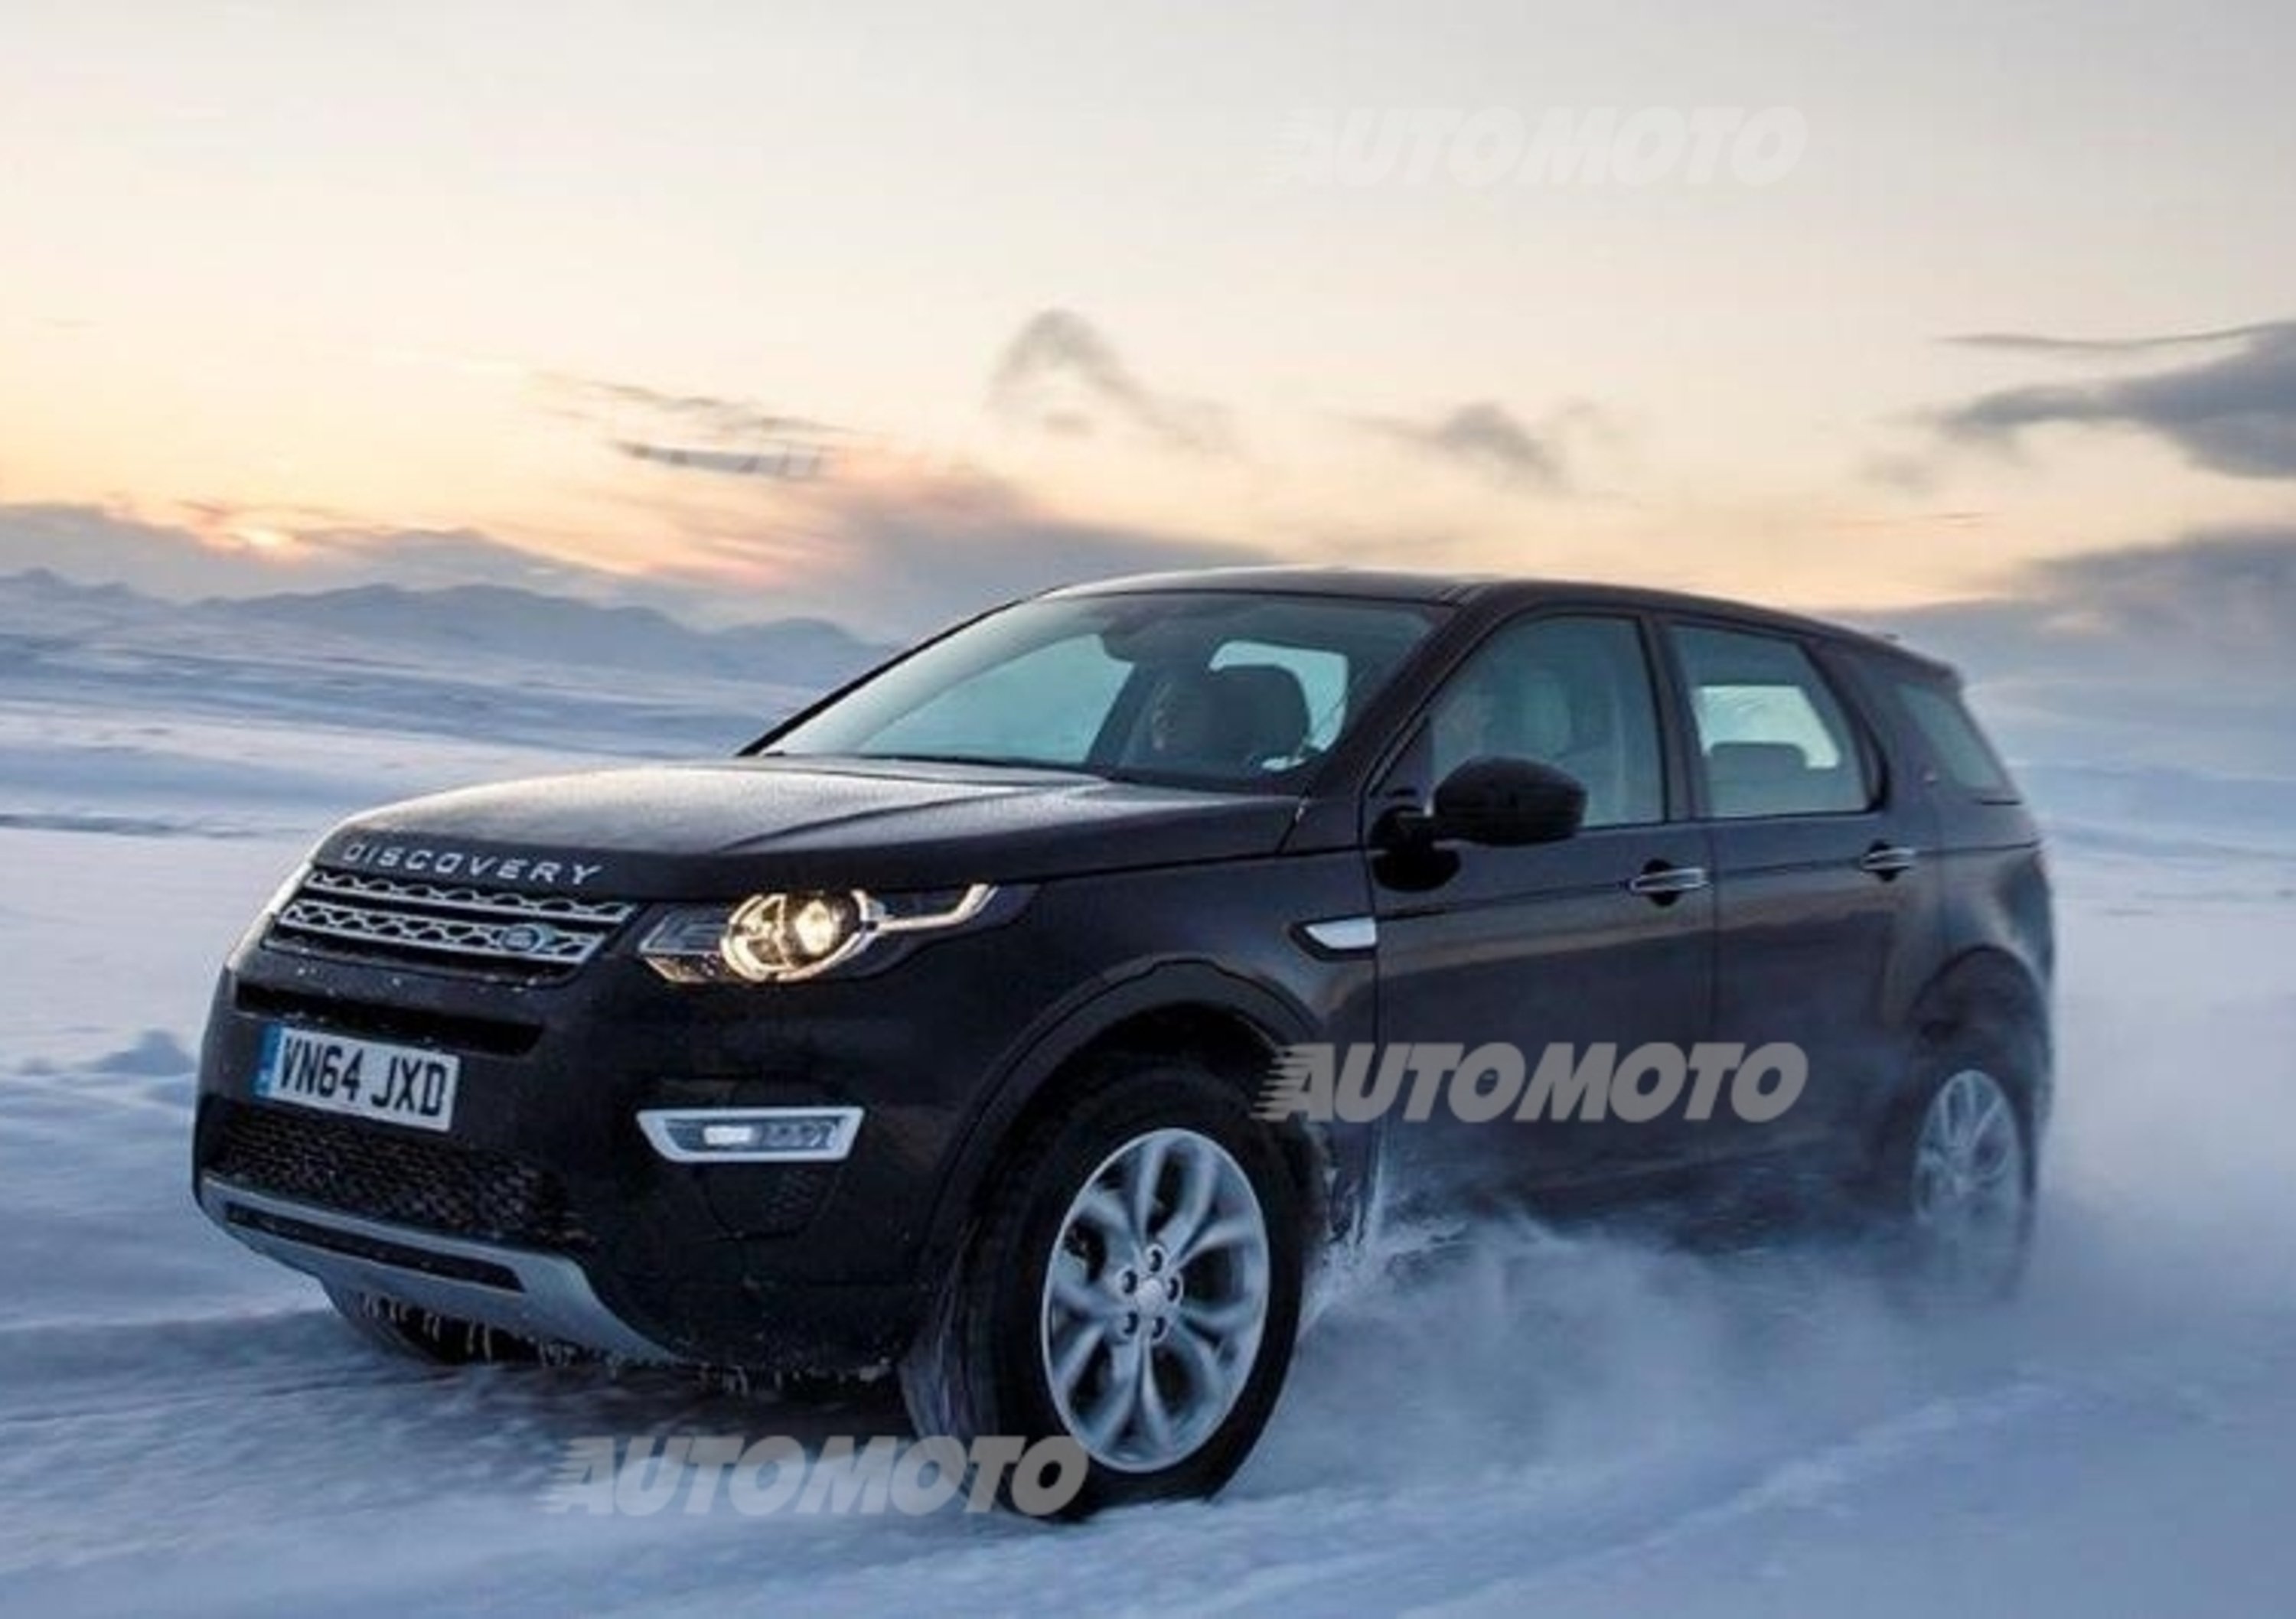 Land Rover Discovery Sport: come nasce un SUV dal foglio bianco?